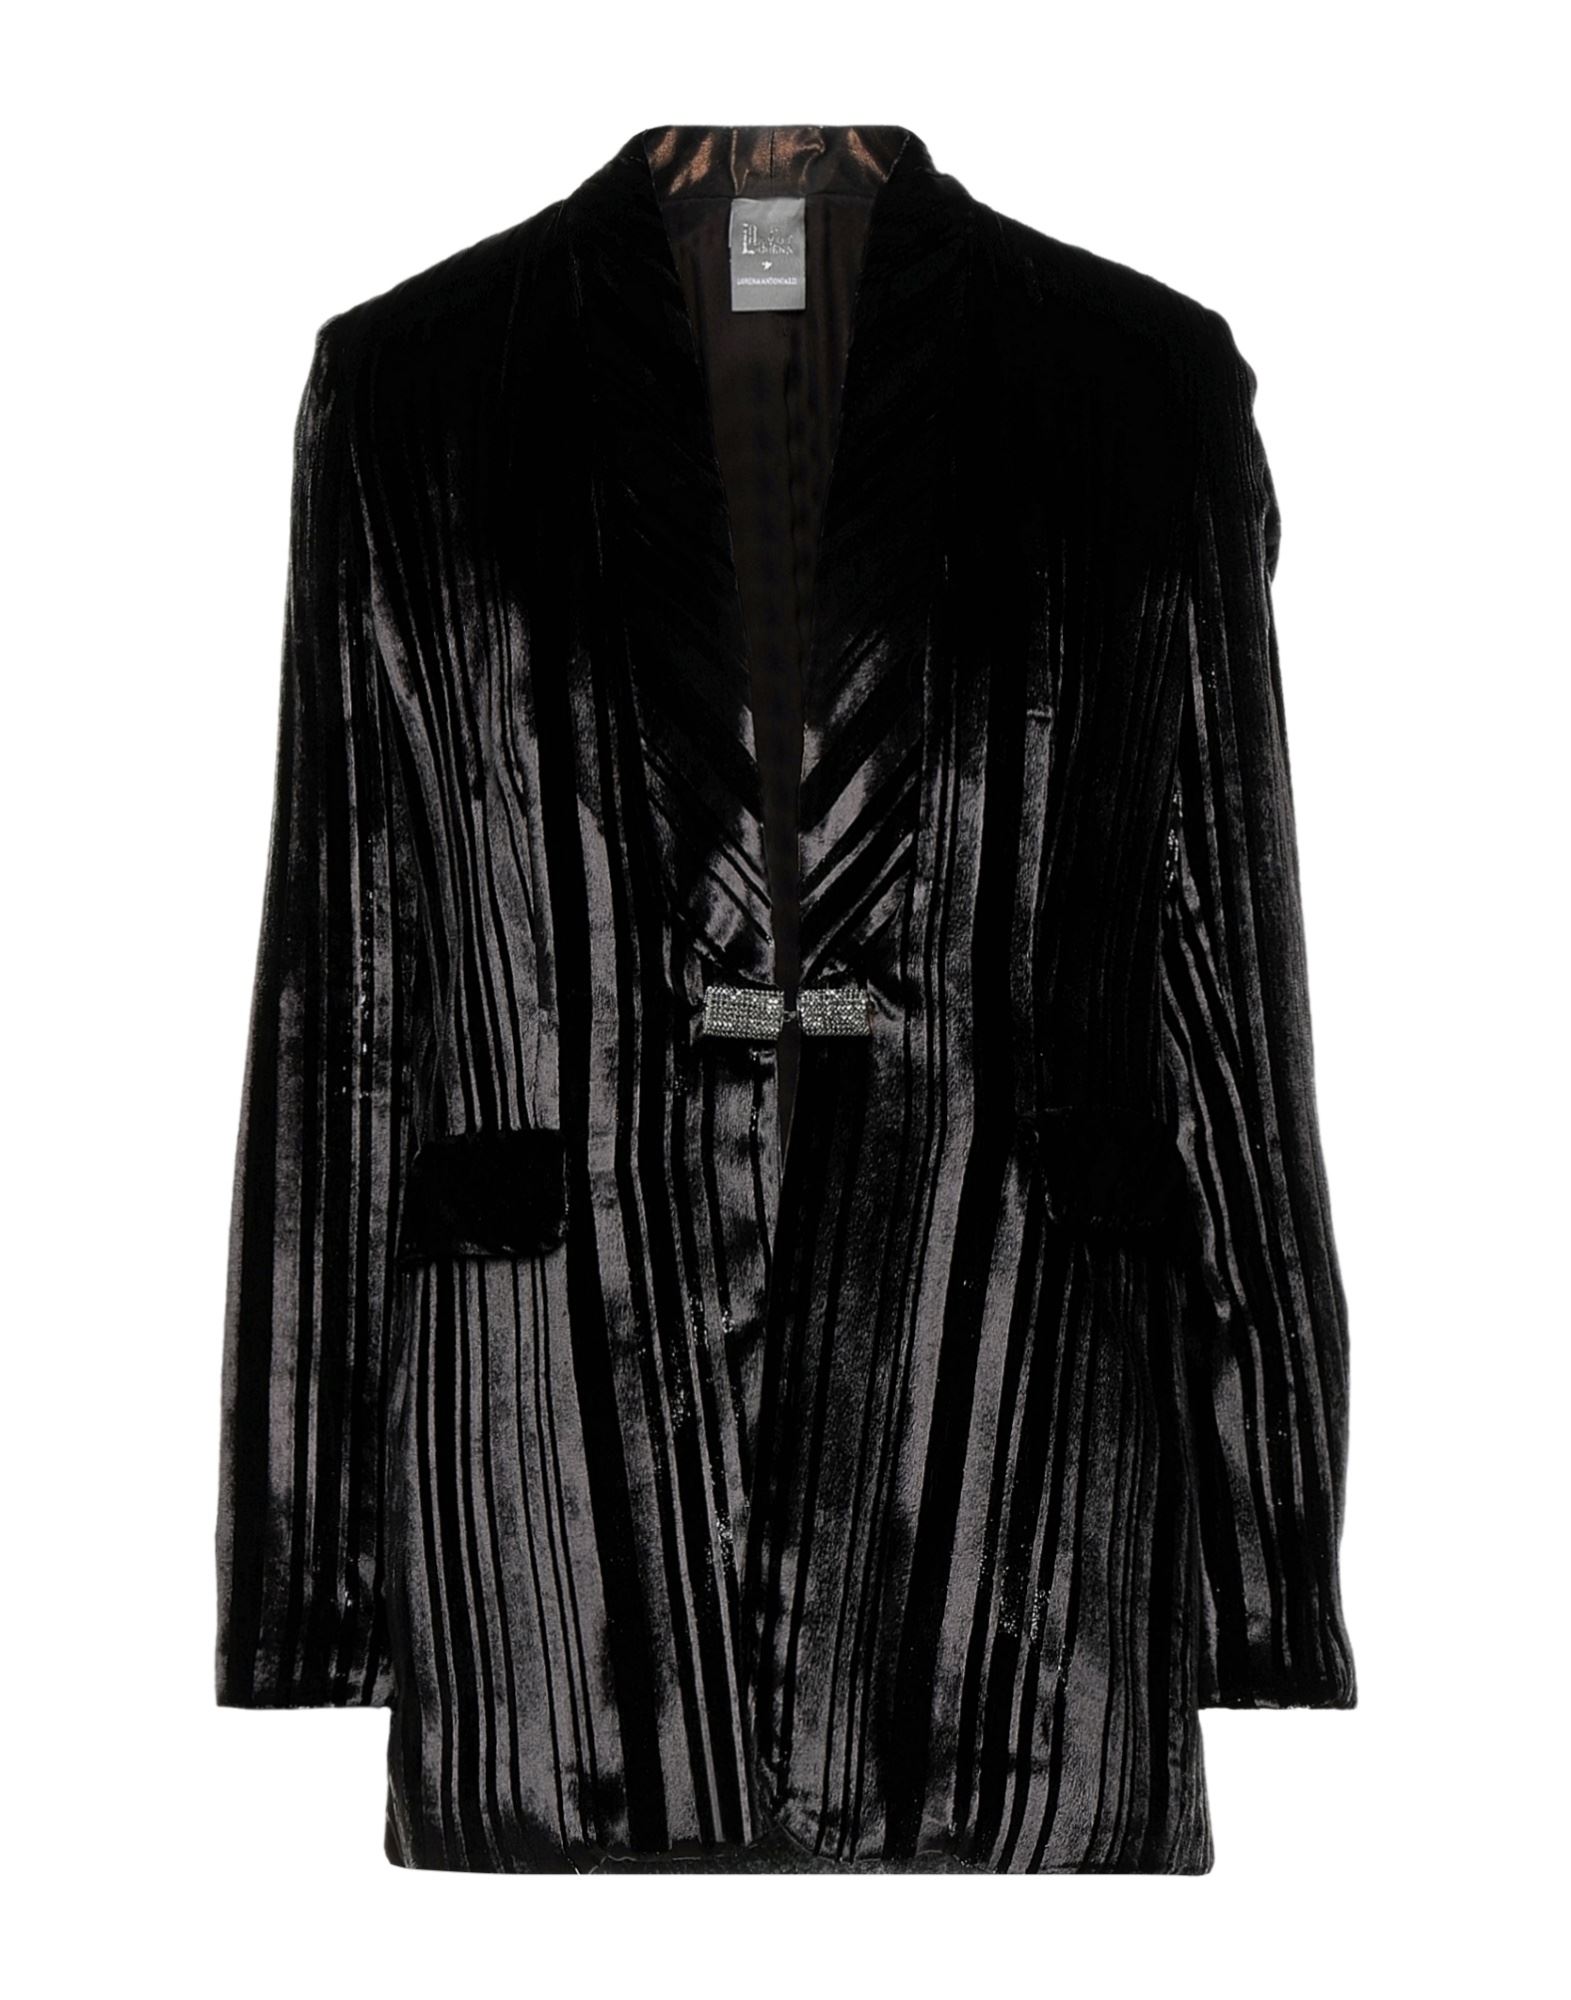 Shop Lorena Hayot By Lorena Antoniazzi Woman Blazer Black Size 6 Viscose, Nylon, Silk